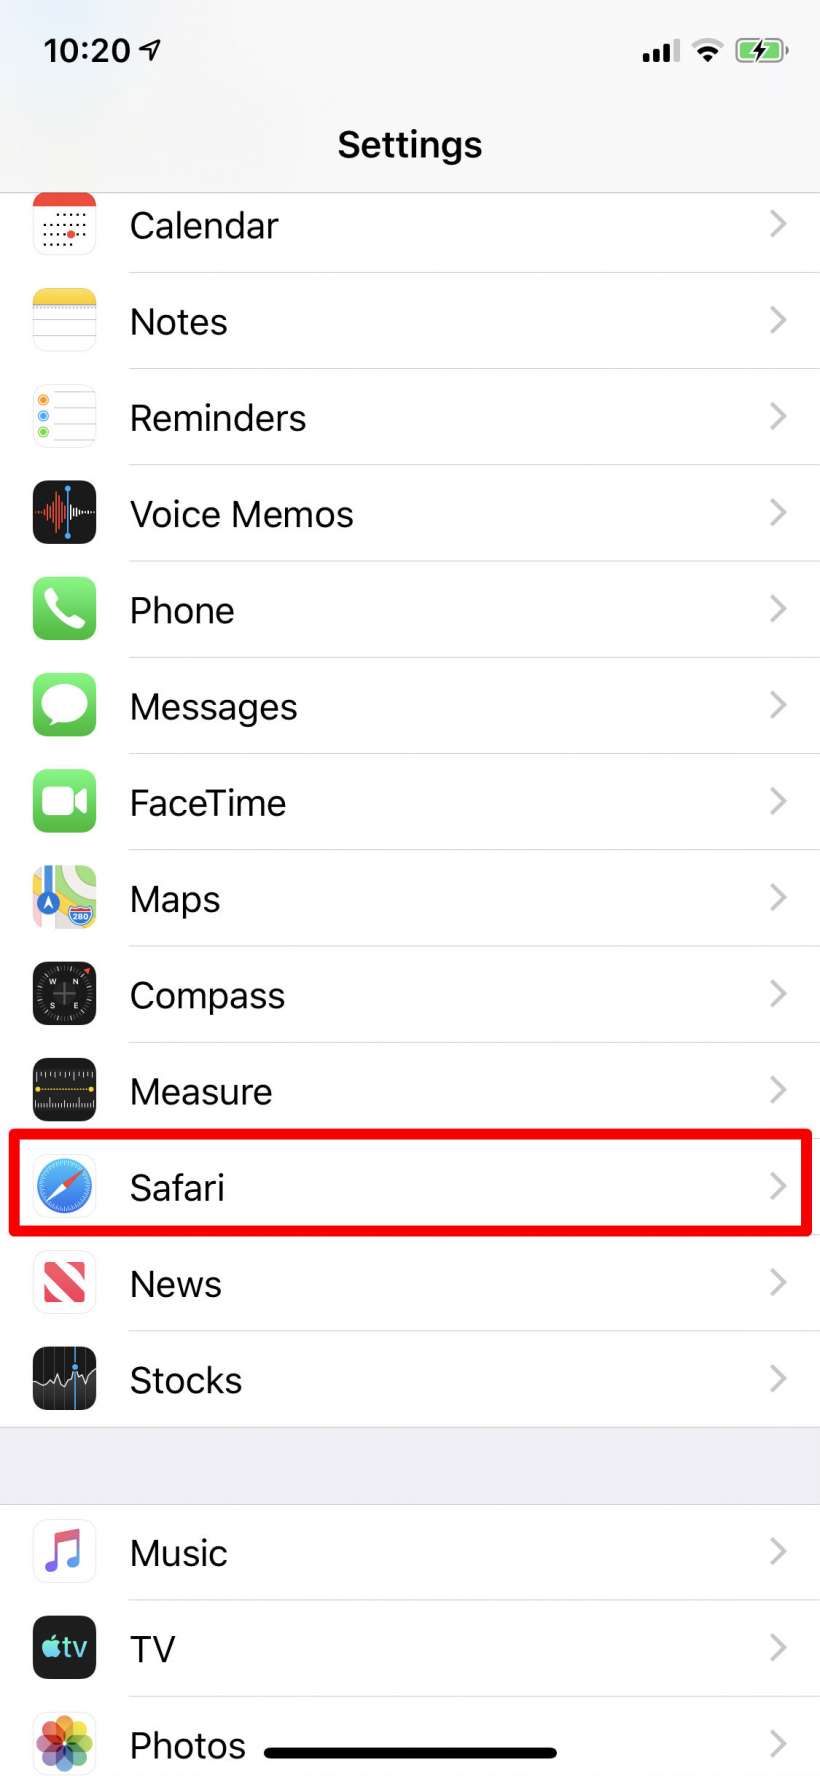 Cómo utilizar la lista de lectura de Safari fuera de línea en el iPhone y el iPad.